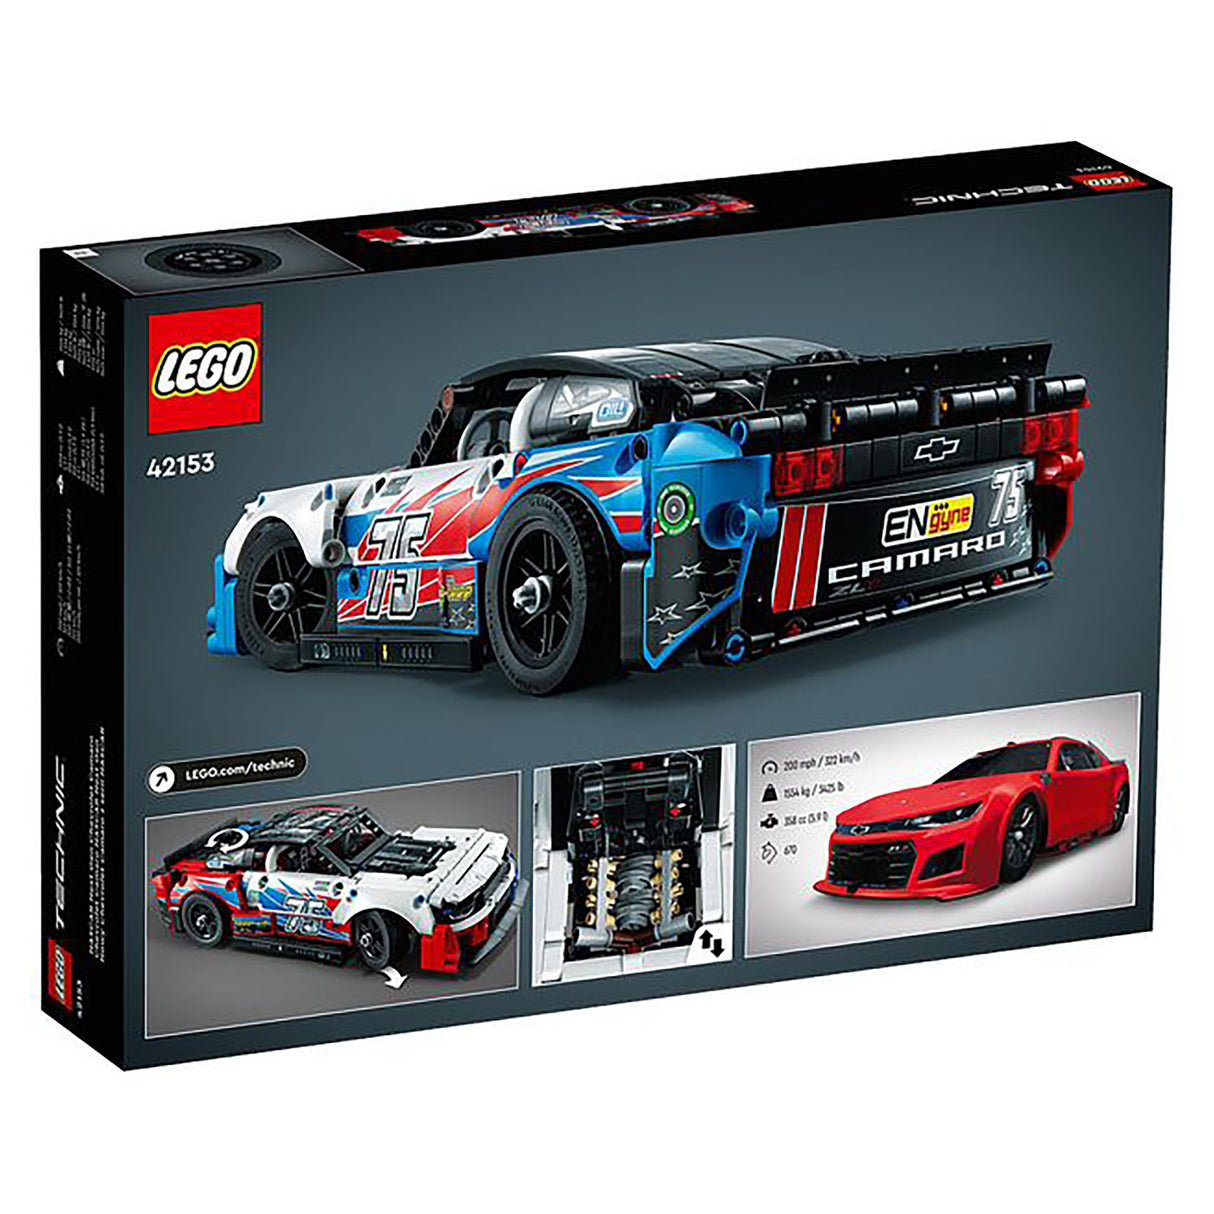 LEGO Technic NASCAR Next Gen Chevrolet Camaro ZL1 42153 (672 pieces)